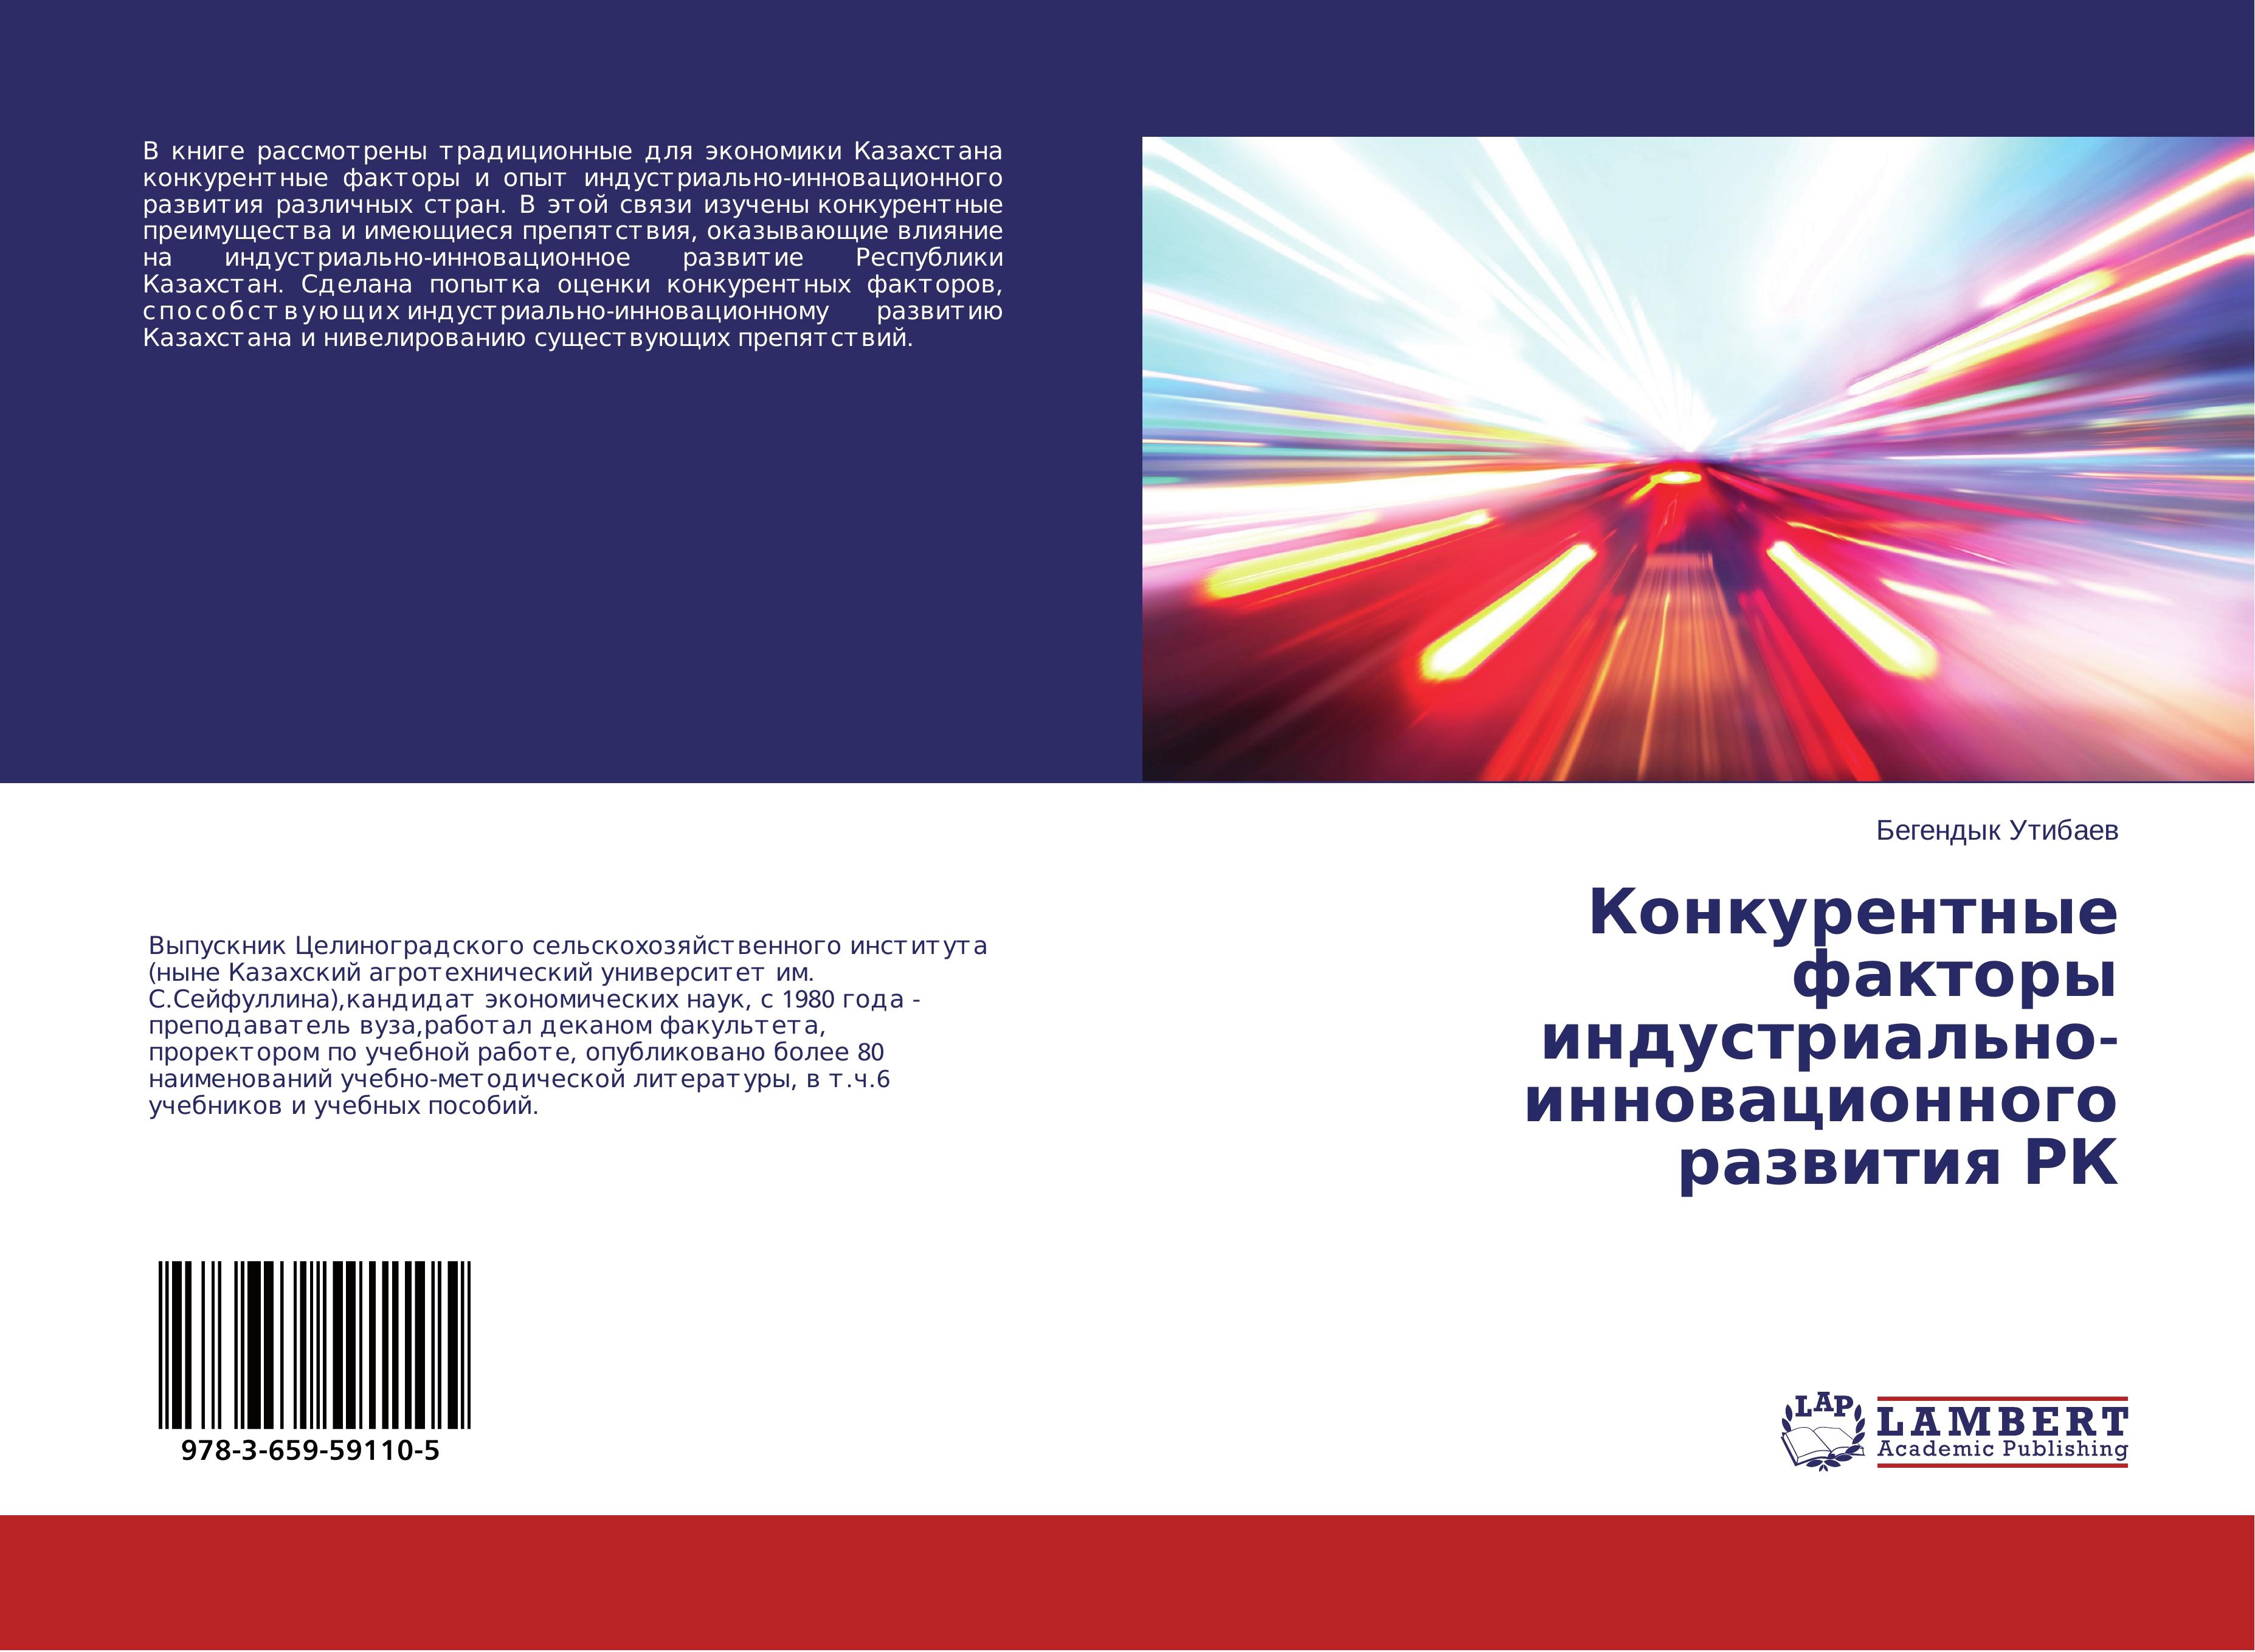 Konkurentnye faktory industrial'no-innovatsionnogo razvitiya RK - Utibaev, Begendyk